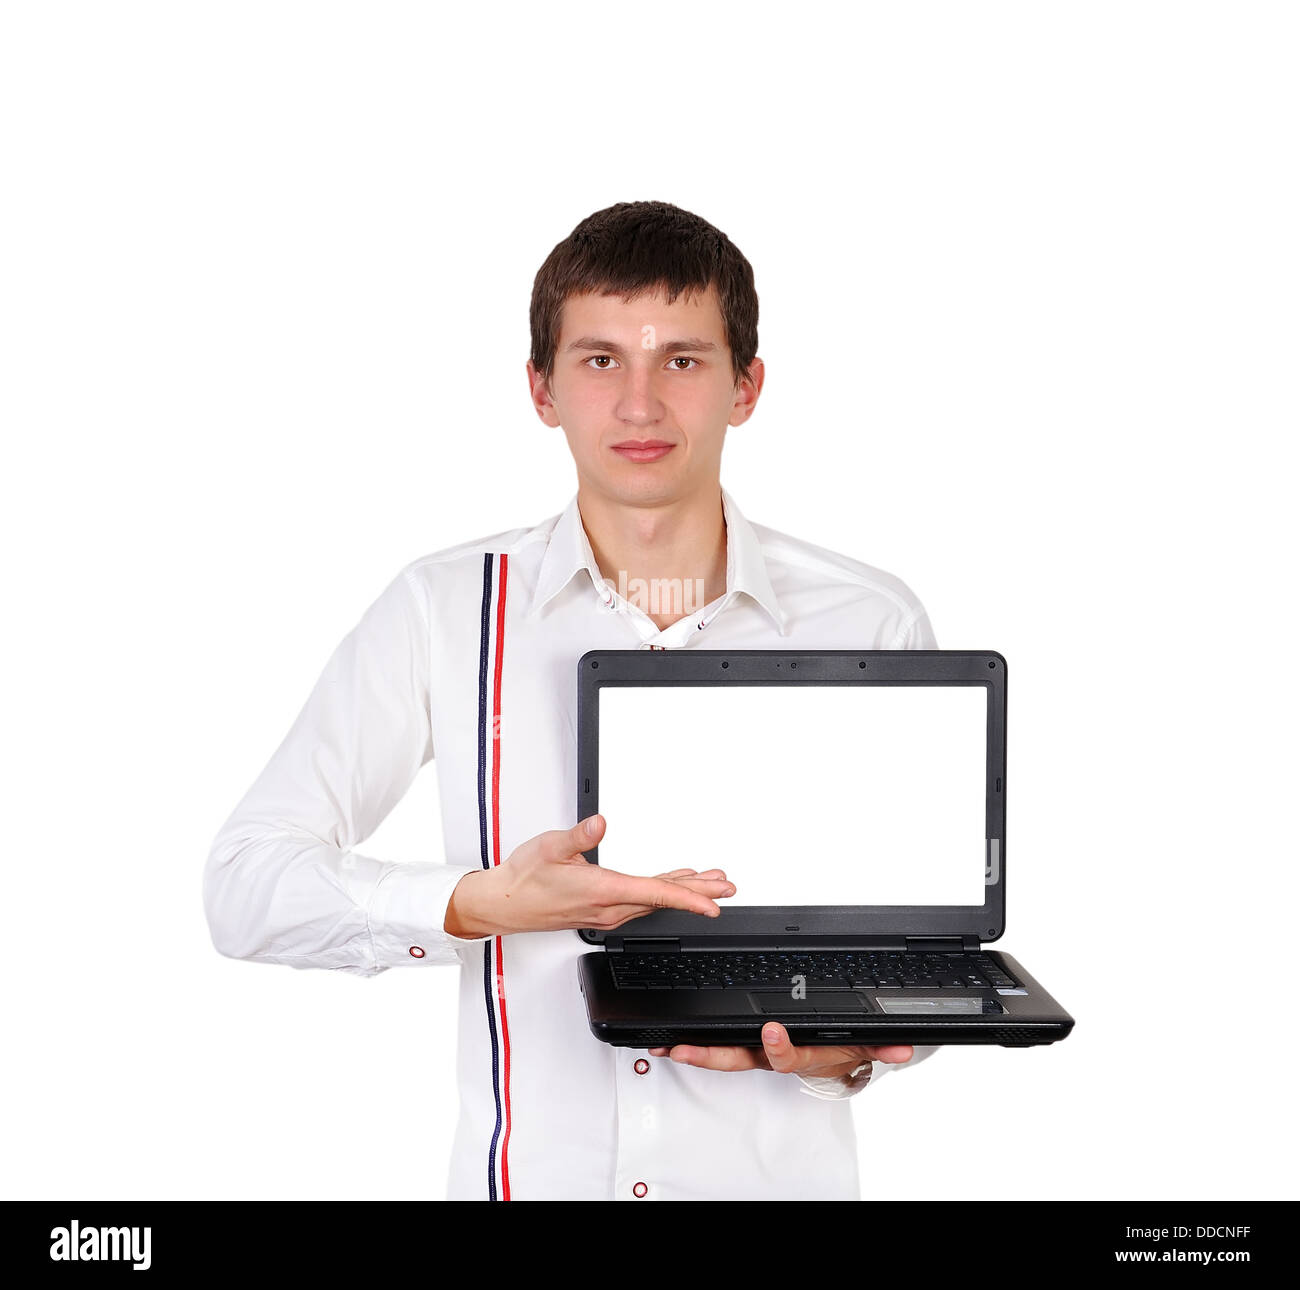 homme avec ordinateur portable Banque D'Images